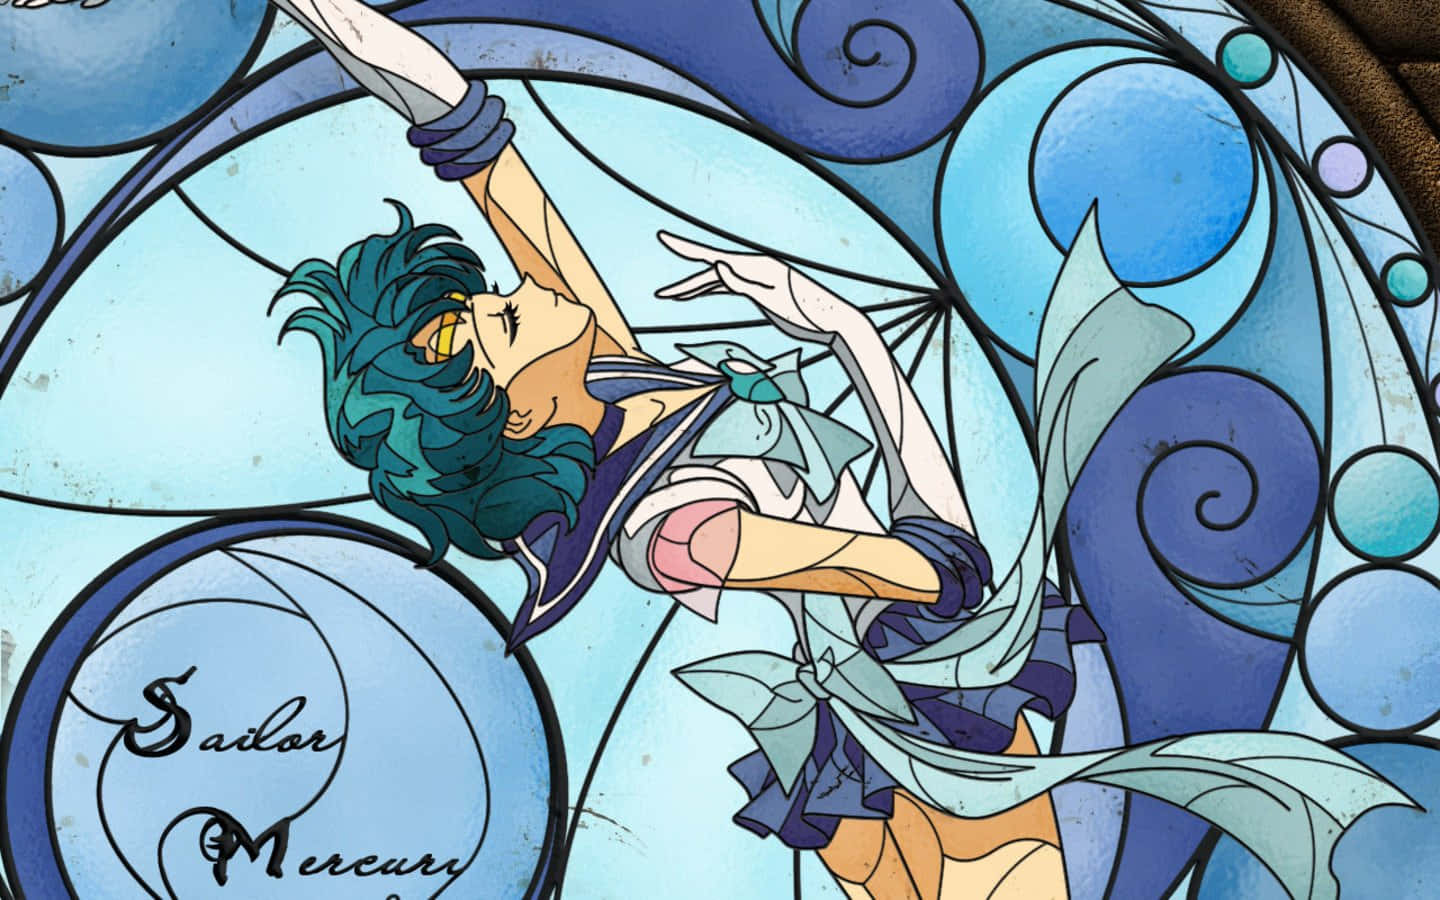 Den fantastiske Sailor Mercury svinger sin stav. Wallpaper